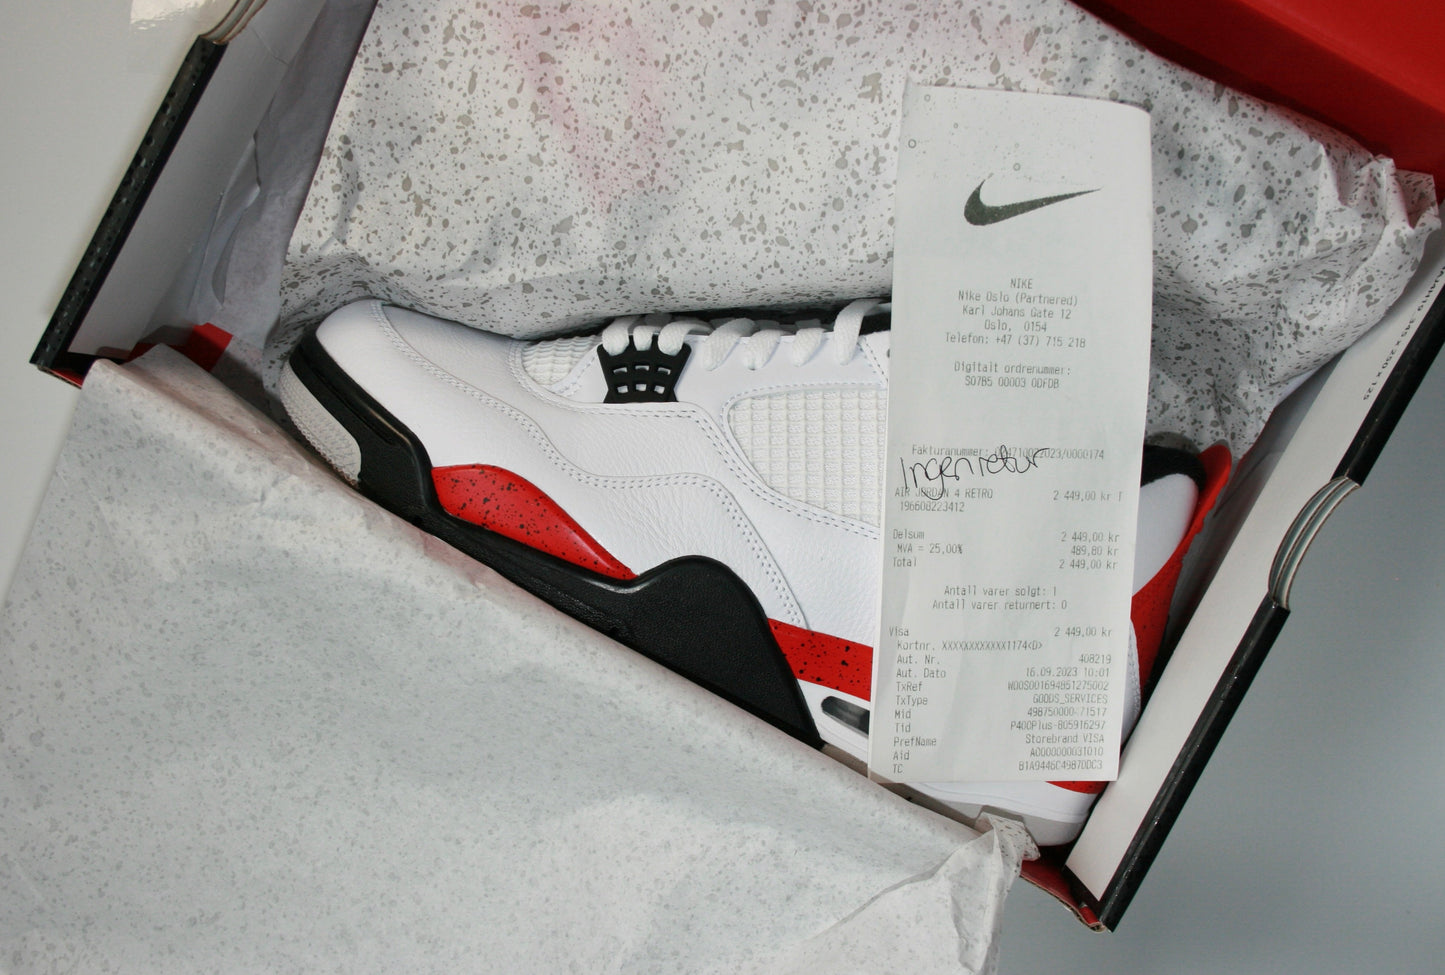 Nike Air Jordan 4 "Red Cement"